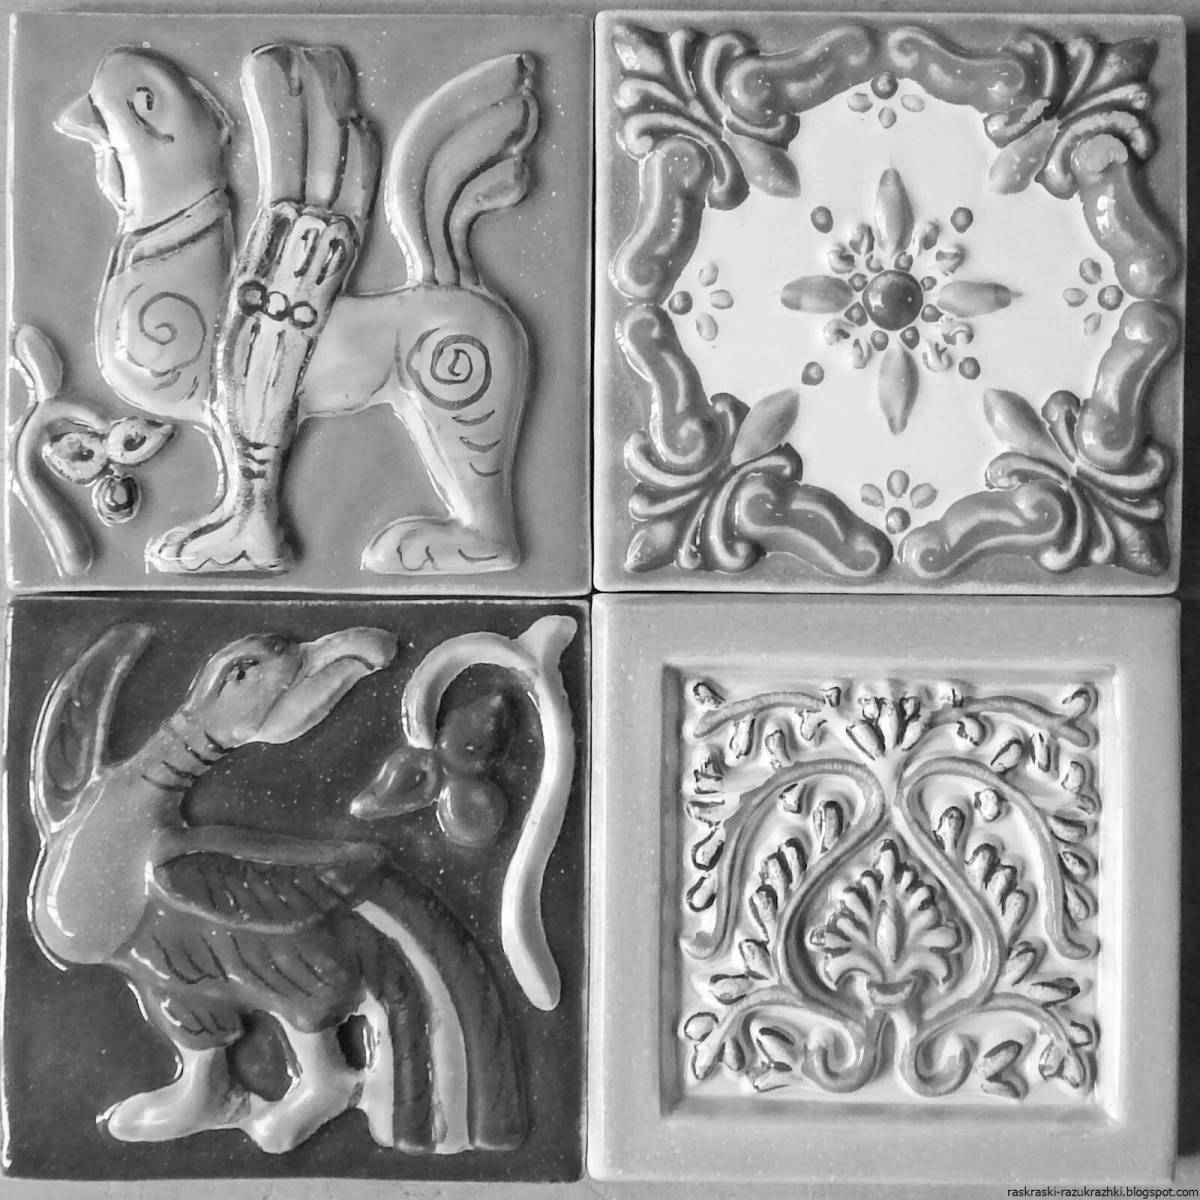 Exquisite handmade ceramic tiles